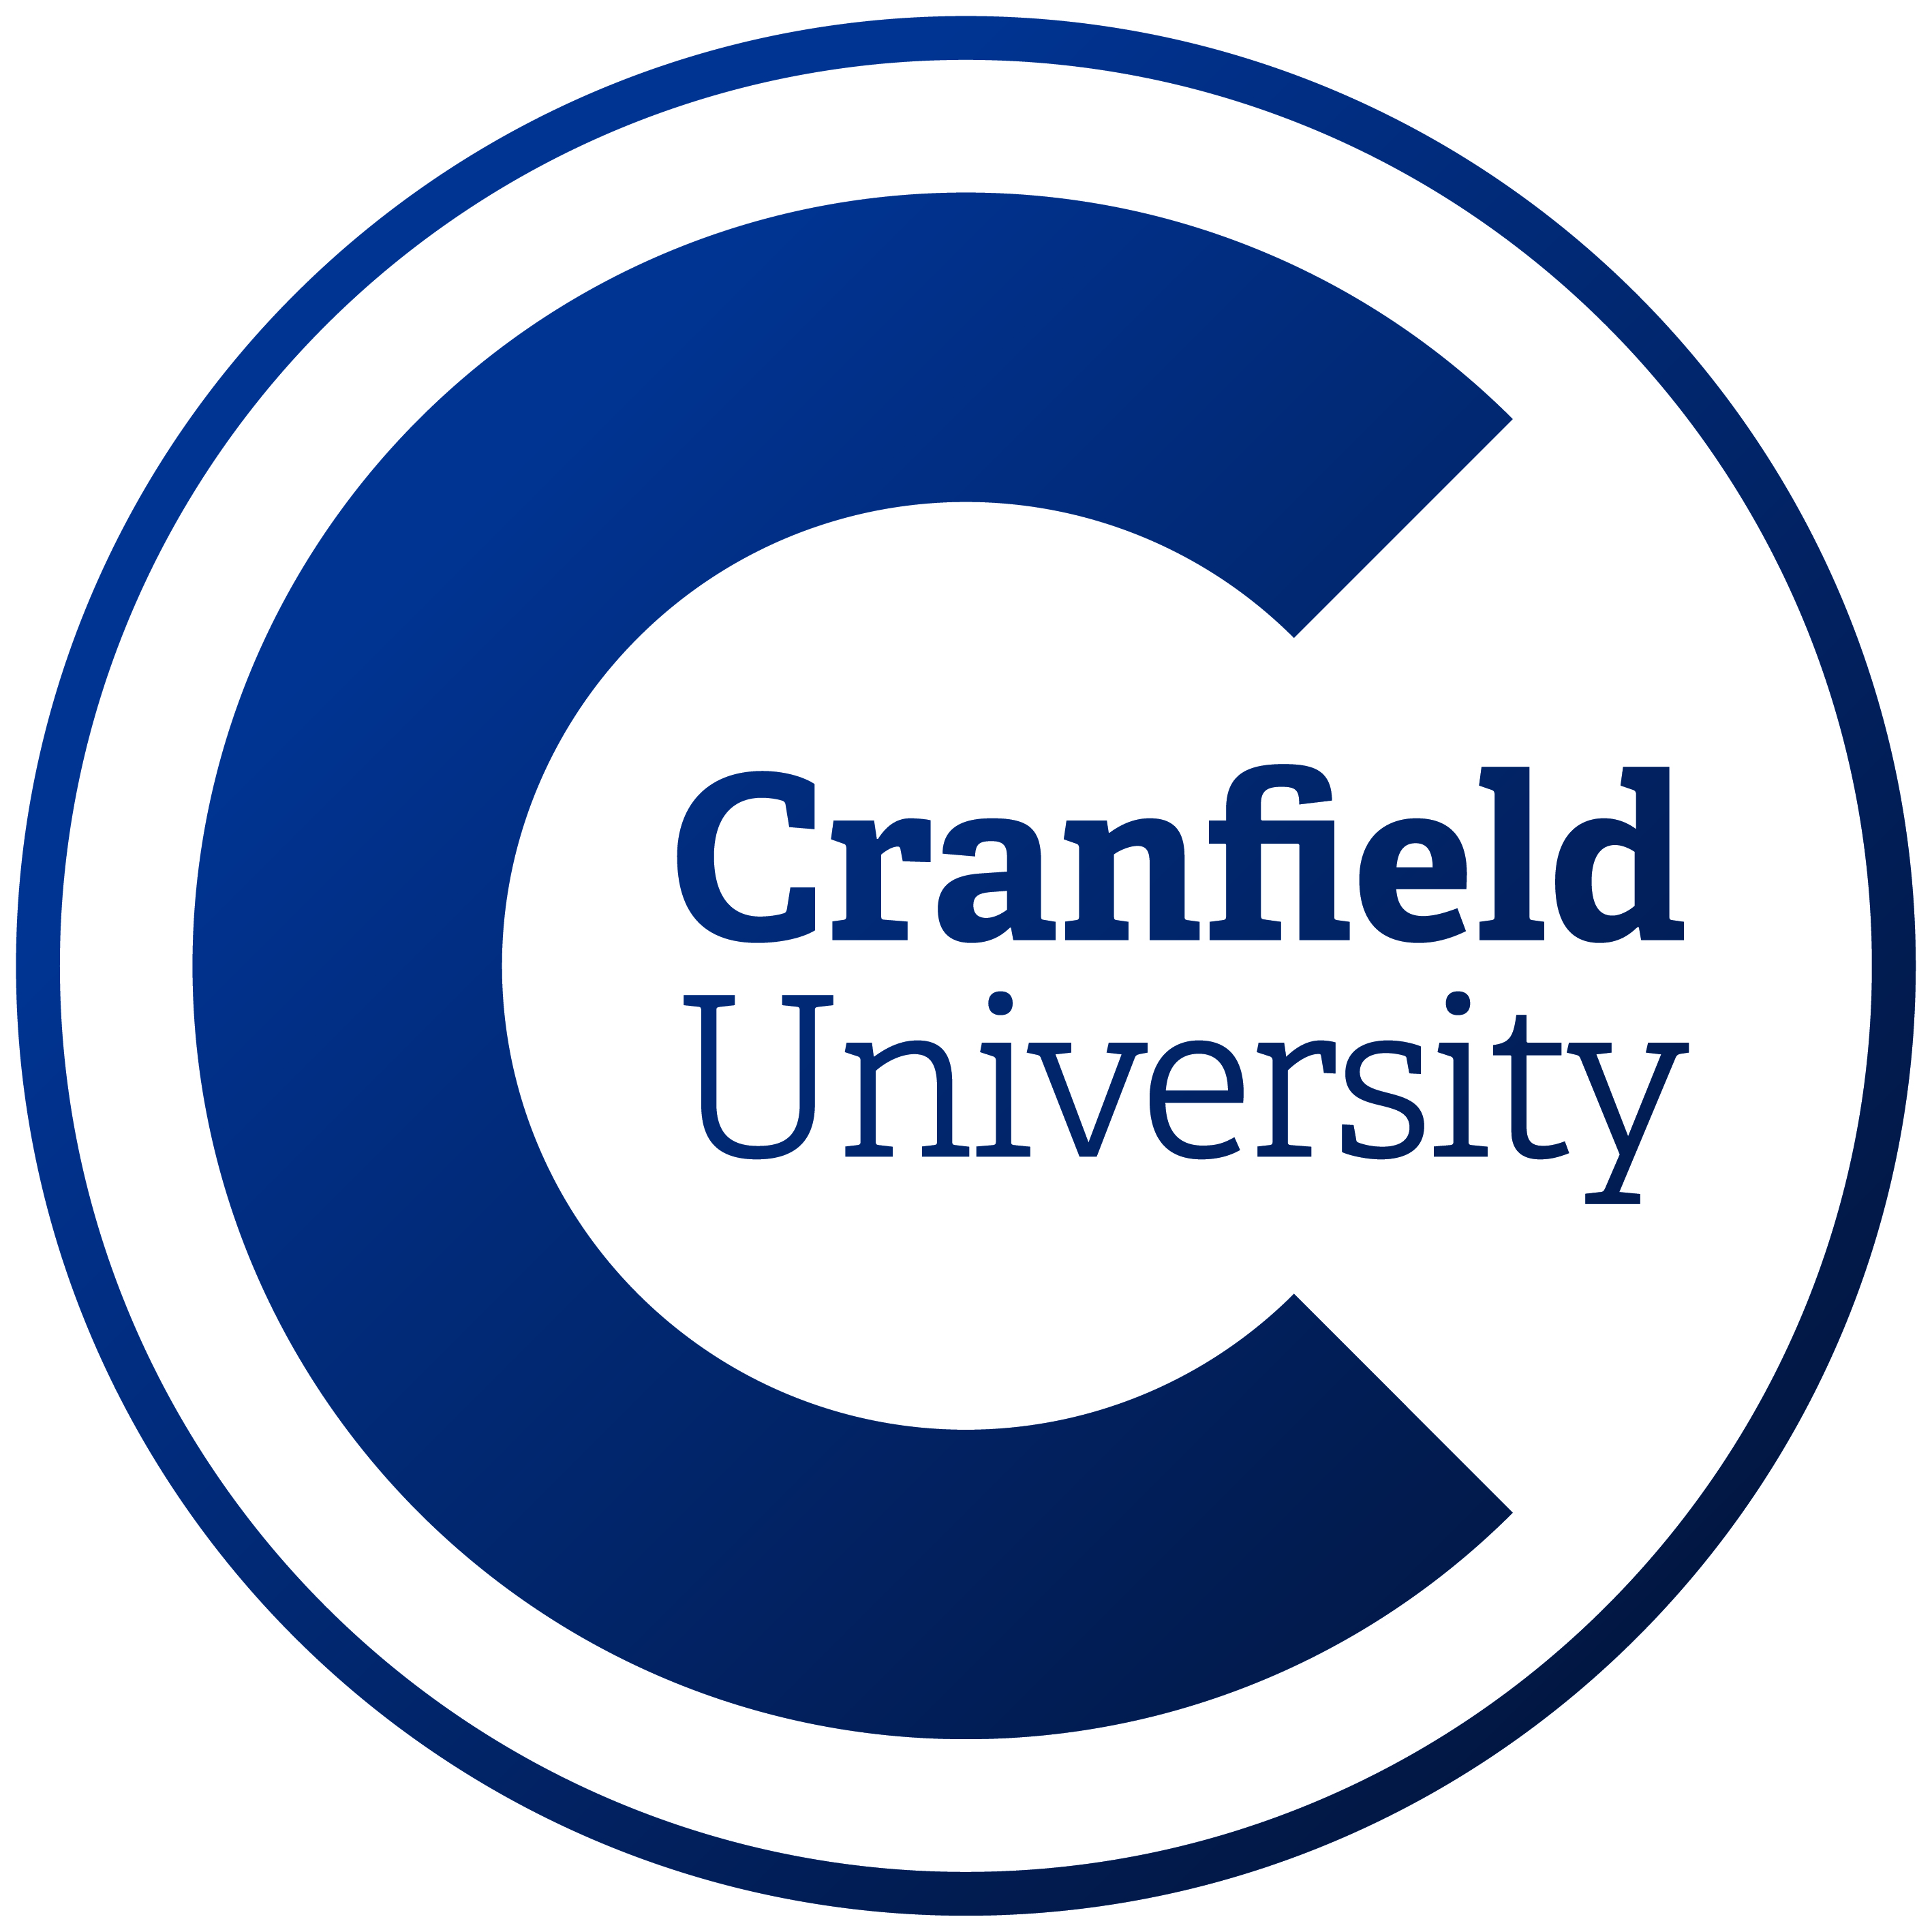 克兰菲尔德大学的标志